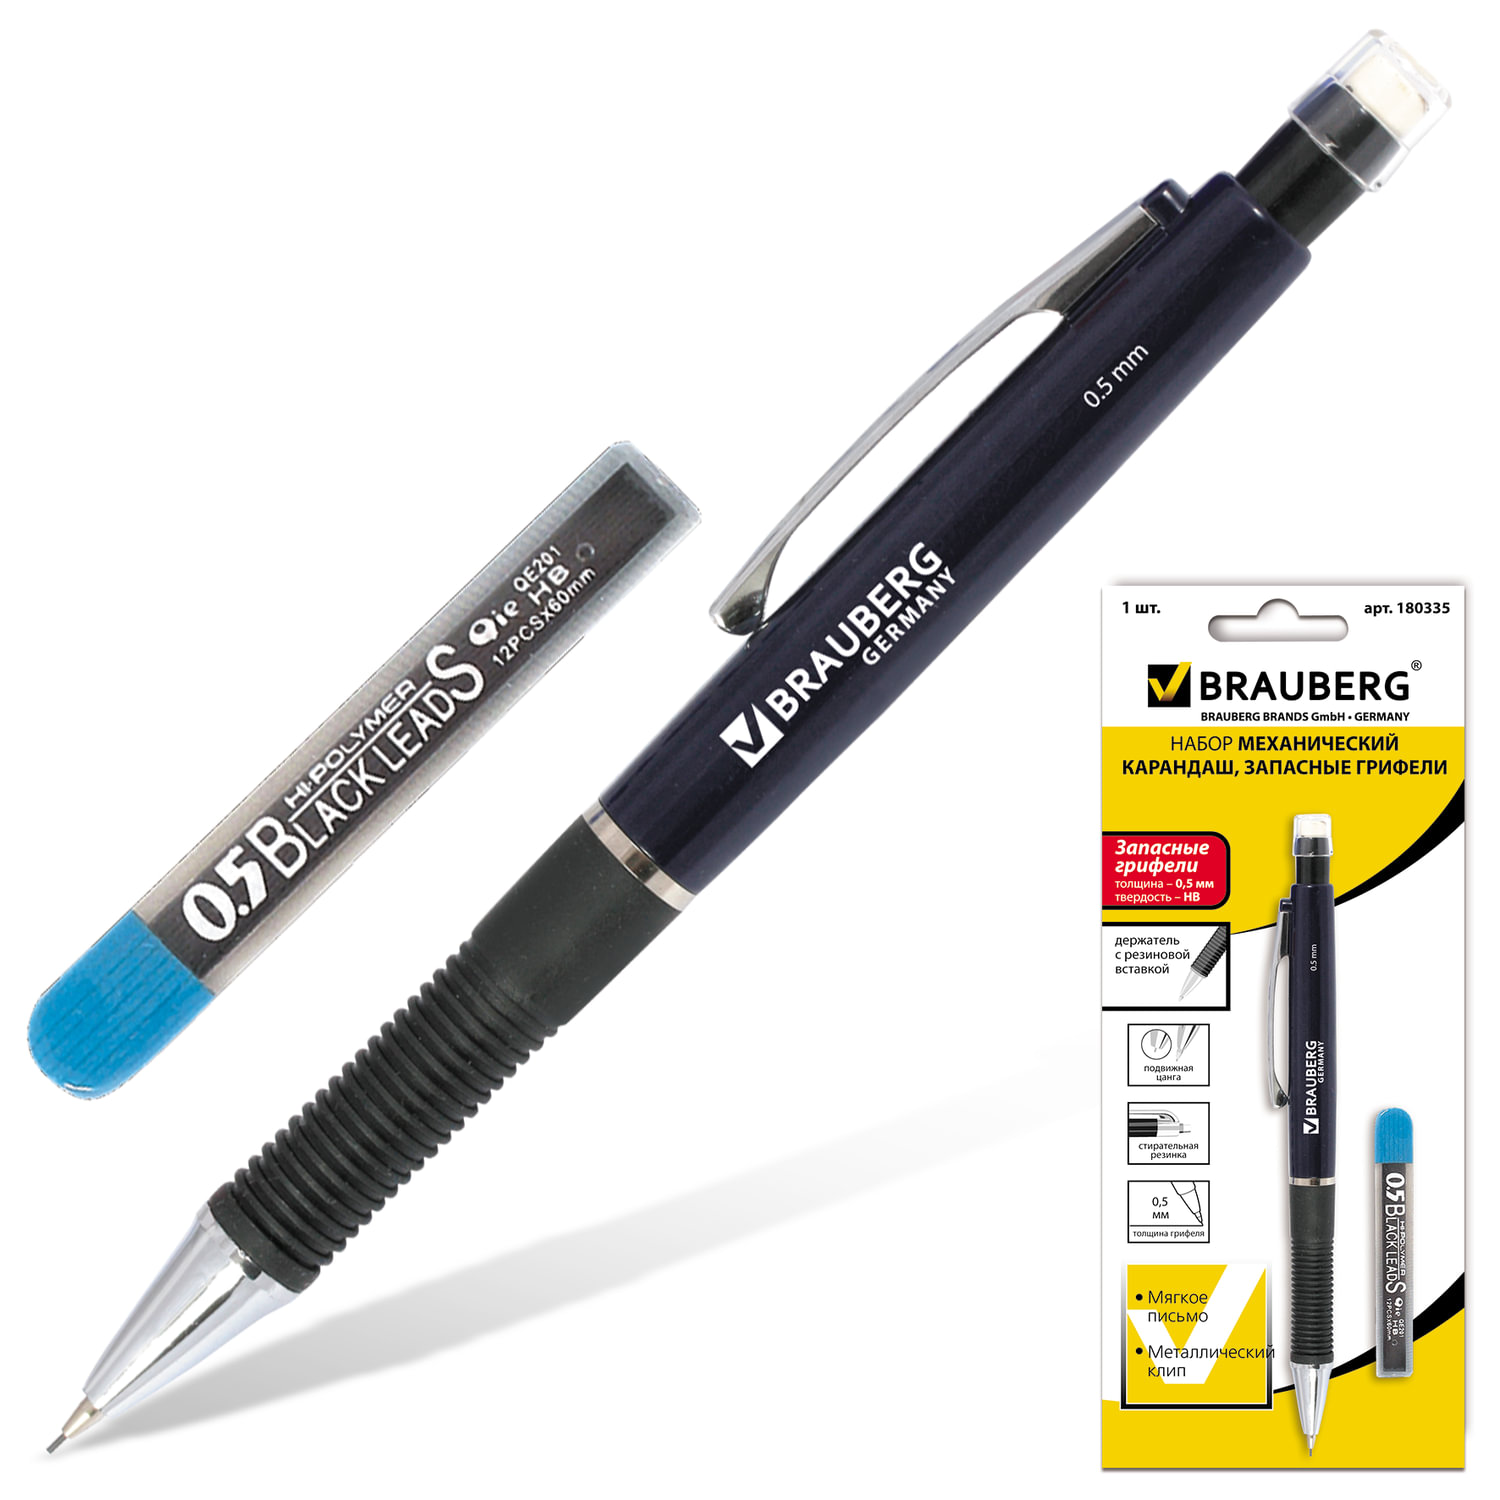 Набор BRAUBERG "Modern": механический карандаш, корпус синий + грифели НВ, 0,5 мм, 12 штук, блистер,